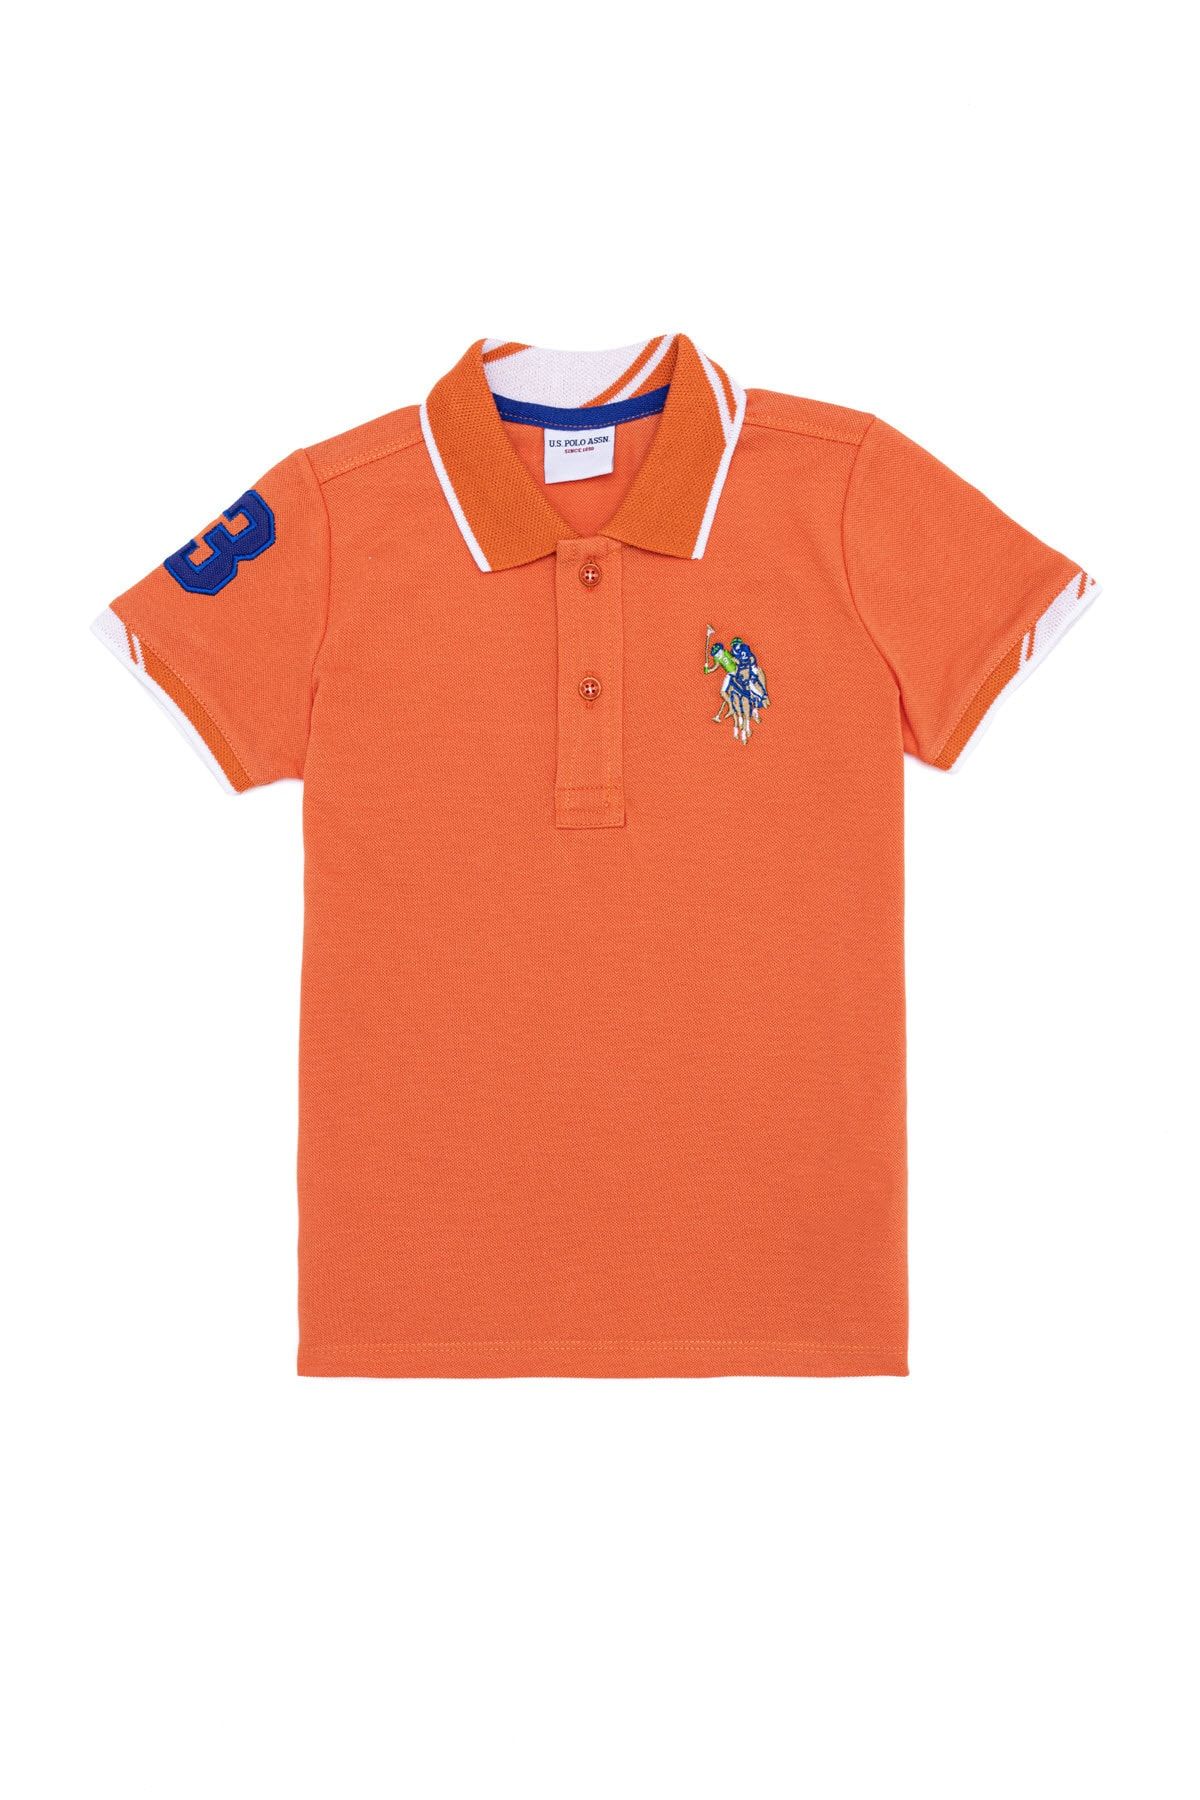 U.S. Polo Assn. Turuncu Erkek Çocuk T-Shirt